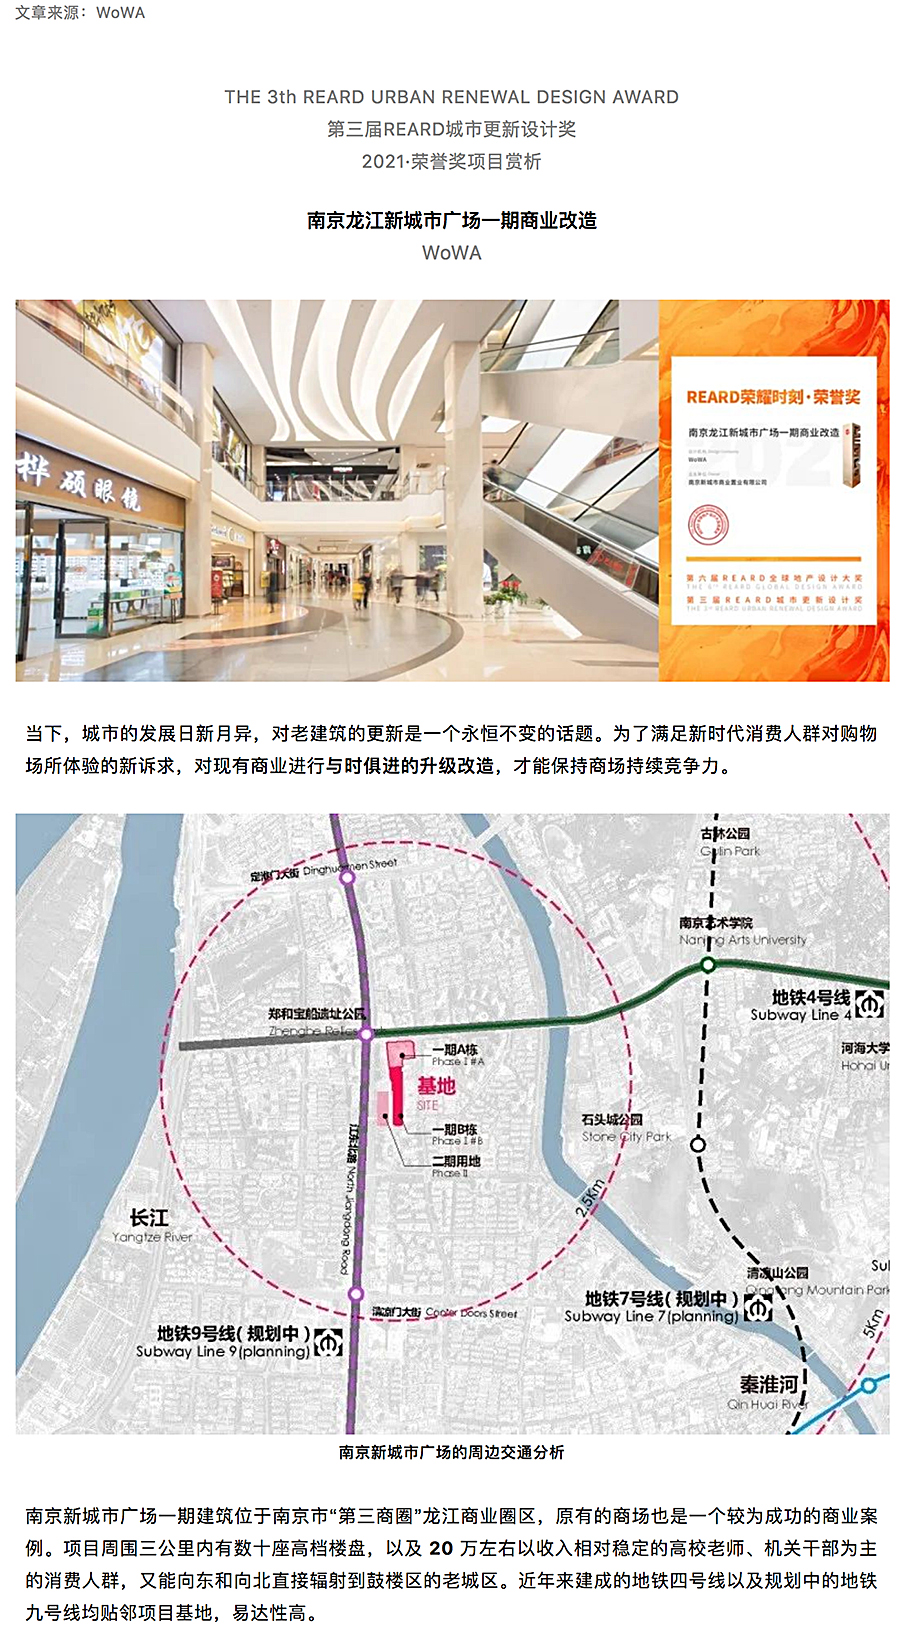 与时俱进的升级改造-_-南京龙江新城市广场一期商业改造_0000_图层-1.jpg